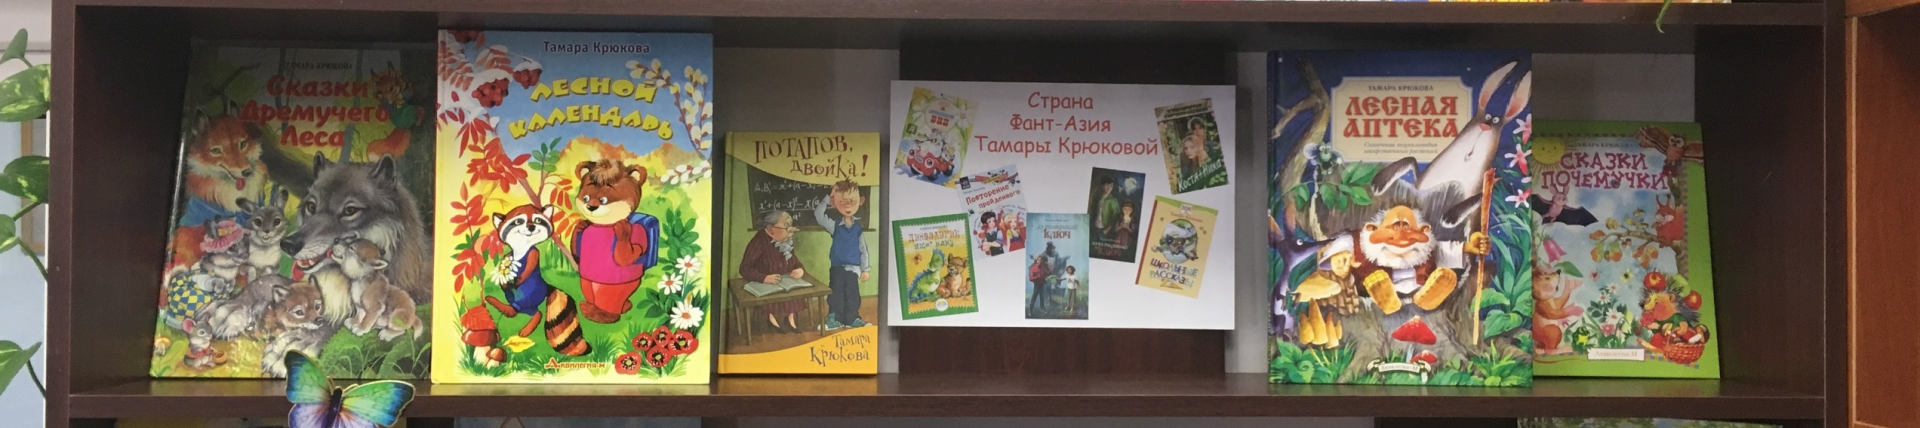 Детская книжная выставка открылась в библиотеке №2